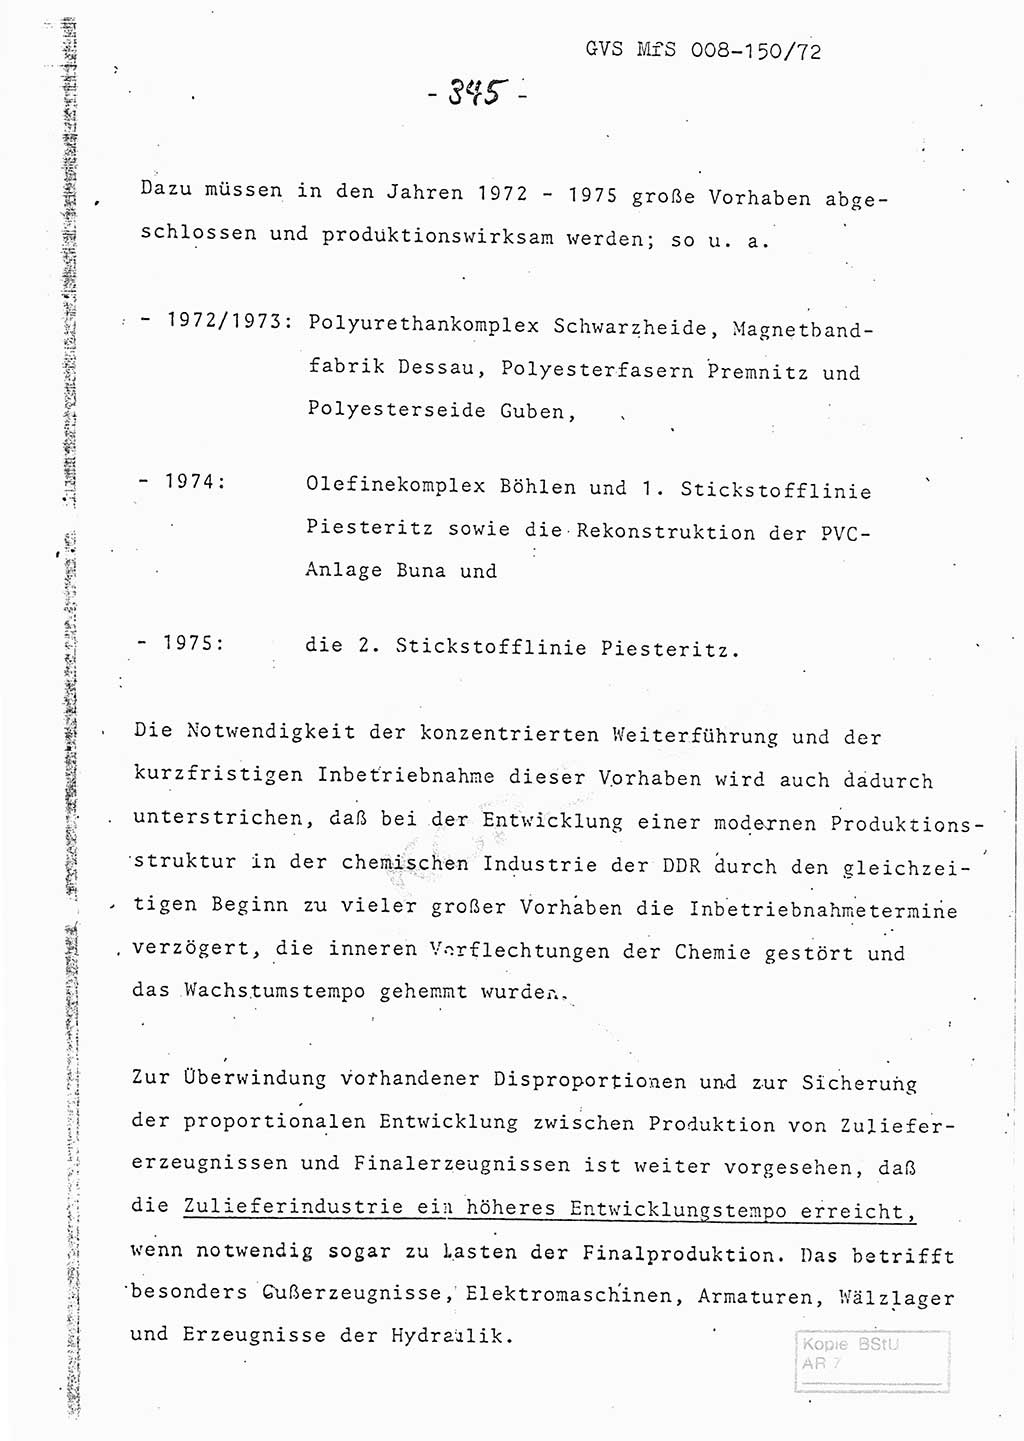 Referat (Entwurf) des Genossen Minister (Generaloberst Erich Mielke) auf der Dienstkonferenz 1972, Ministerium für Staatssicherheit (MfS) [Deutsche Demokratische Republik (DDR)], Der Minister, Geheime Verschlußsache (GVS) 008-150/72, Berlin 25.2.1972, Seite 345 (Ref. Entw. DK MfS DDR Min. GVS 008-150/72 1972, S. 345)